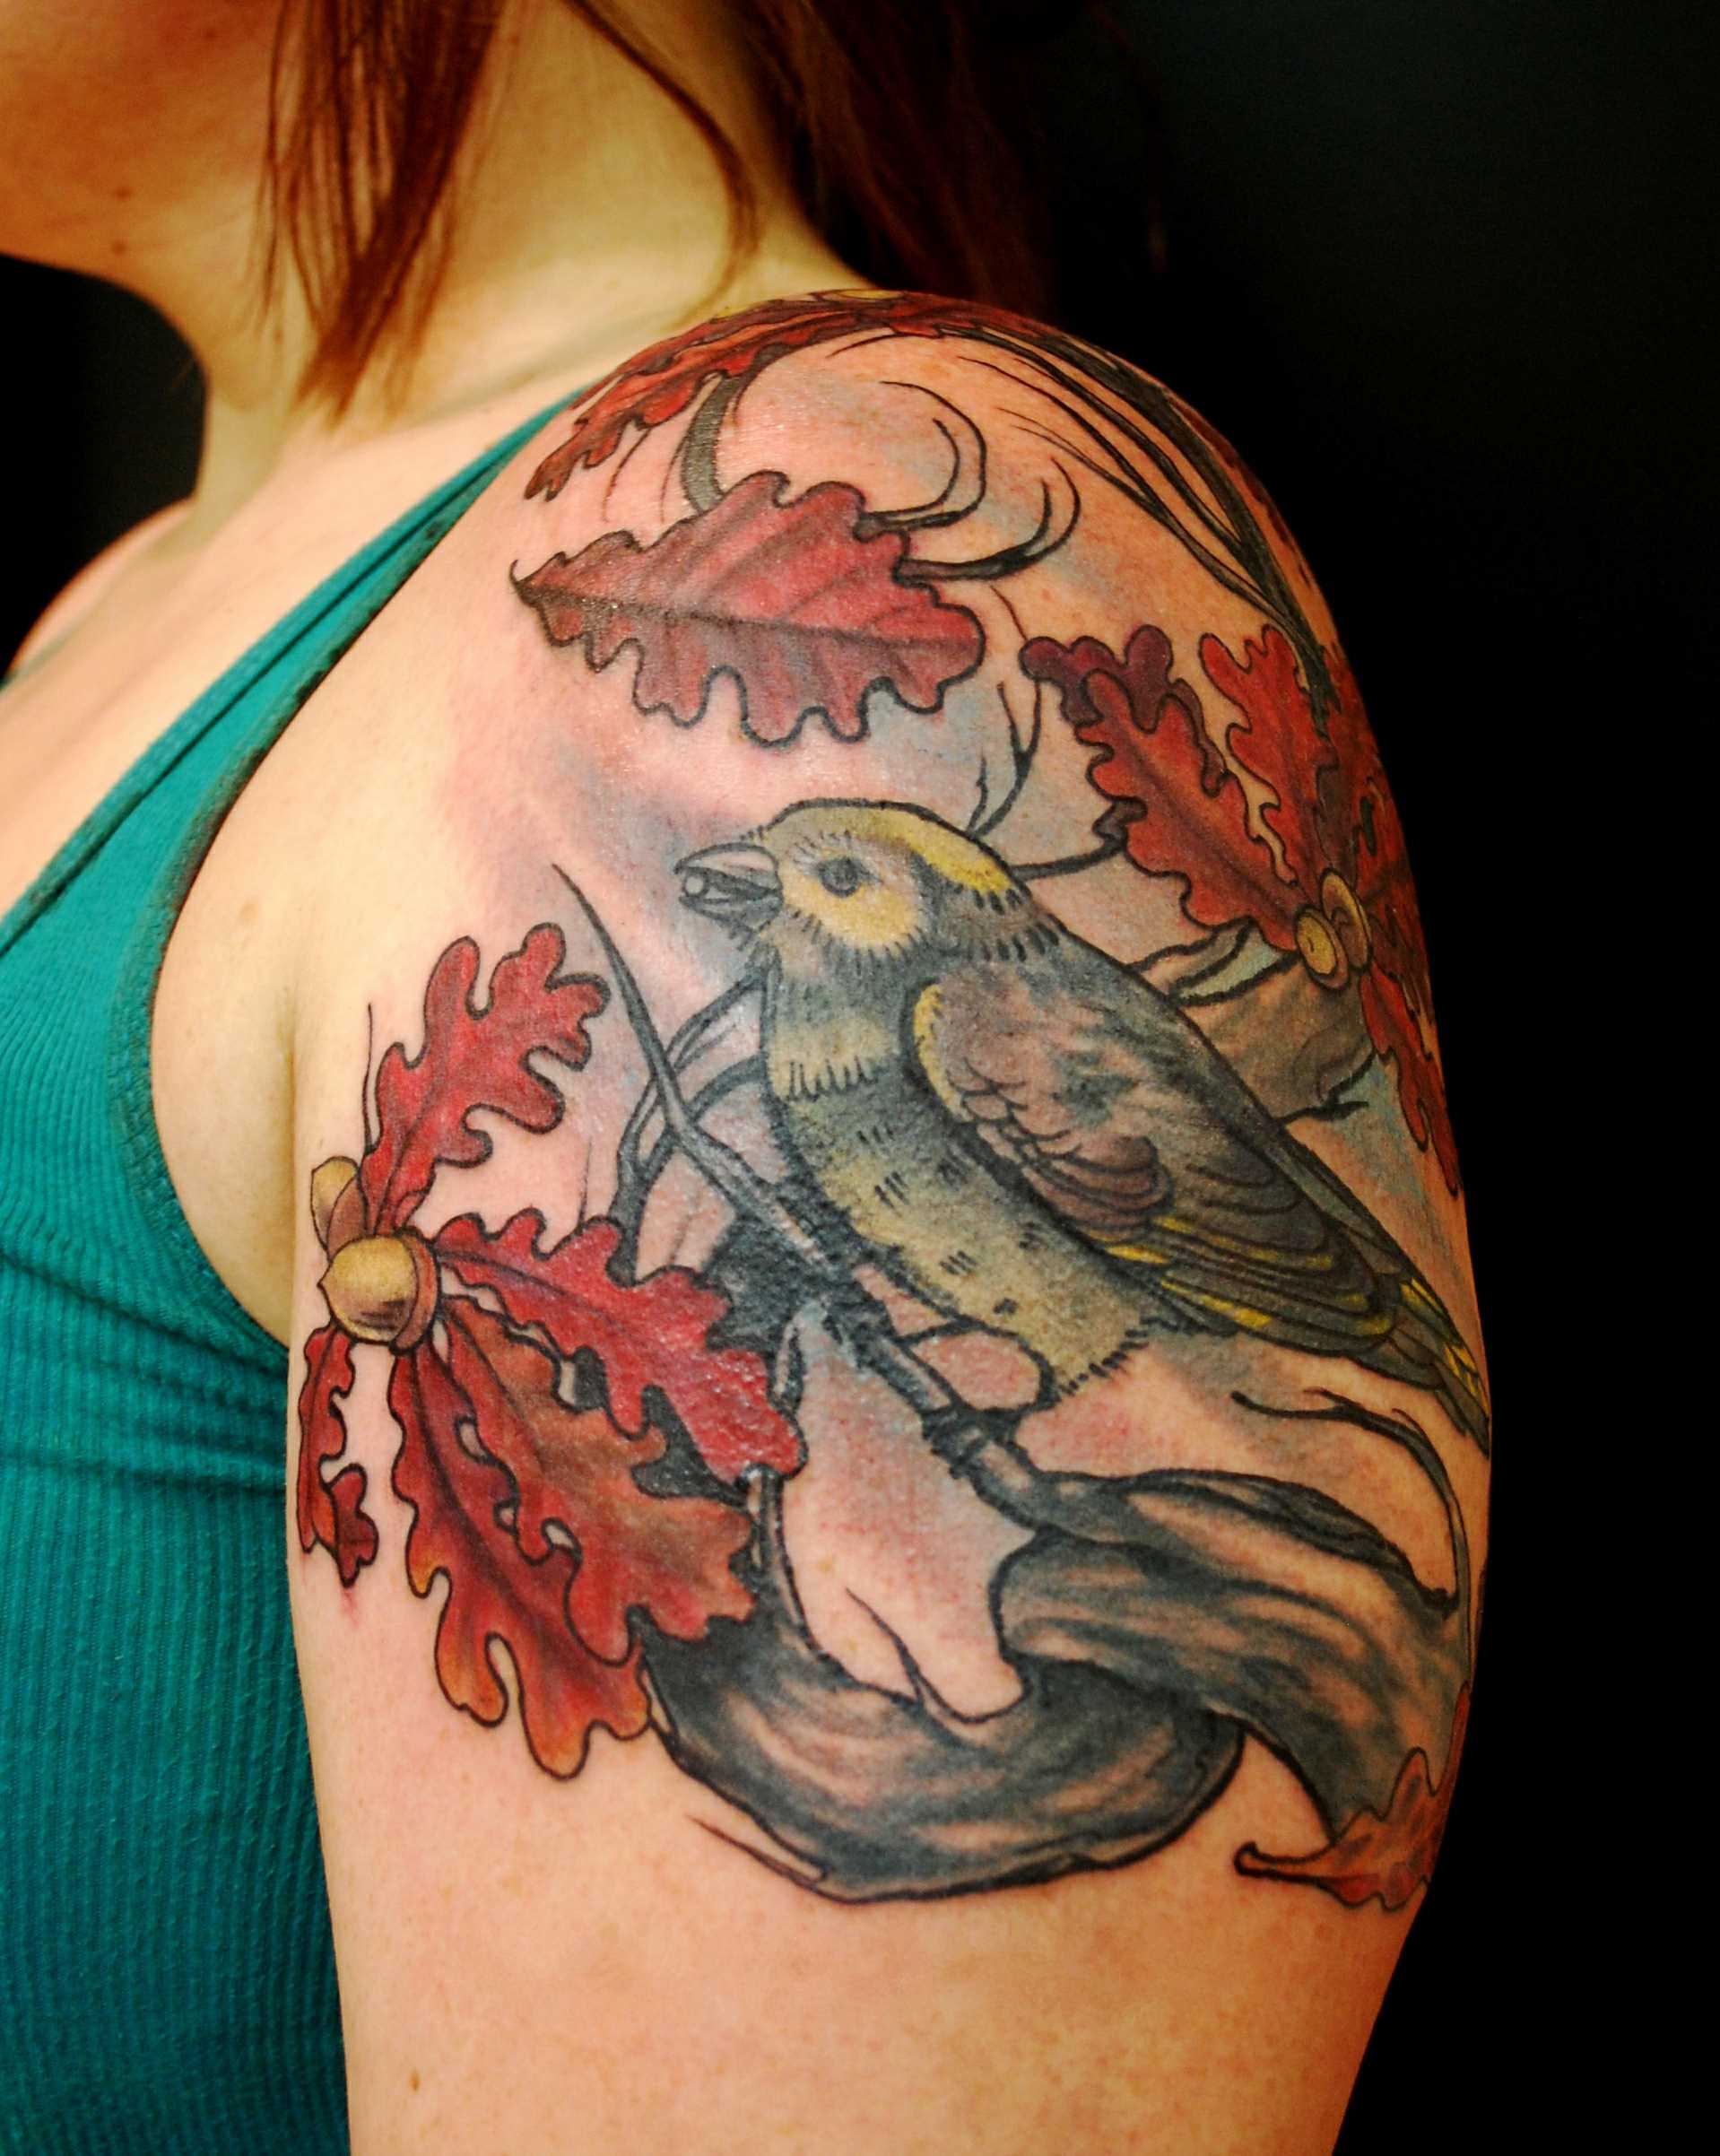 Tatuagem no ombro da menina - folhas e o pássaro